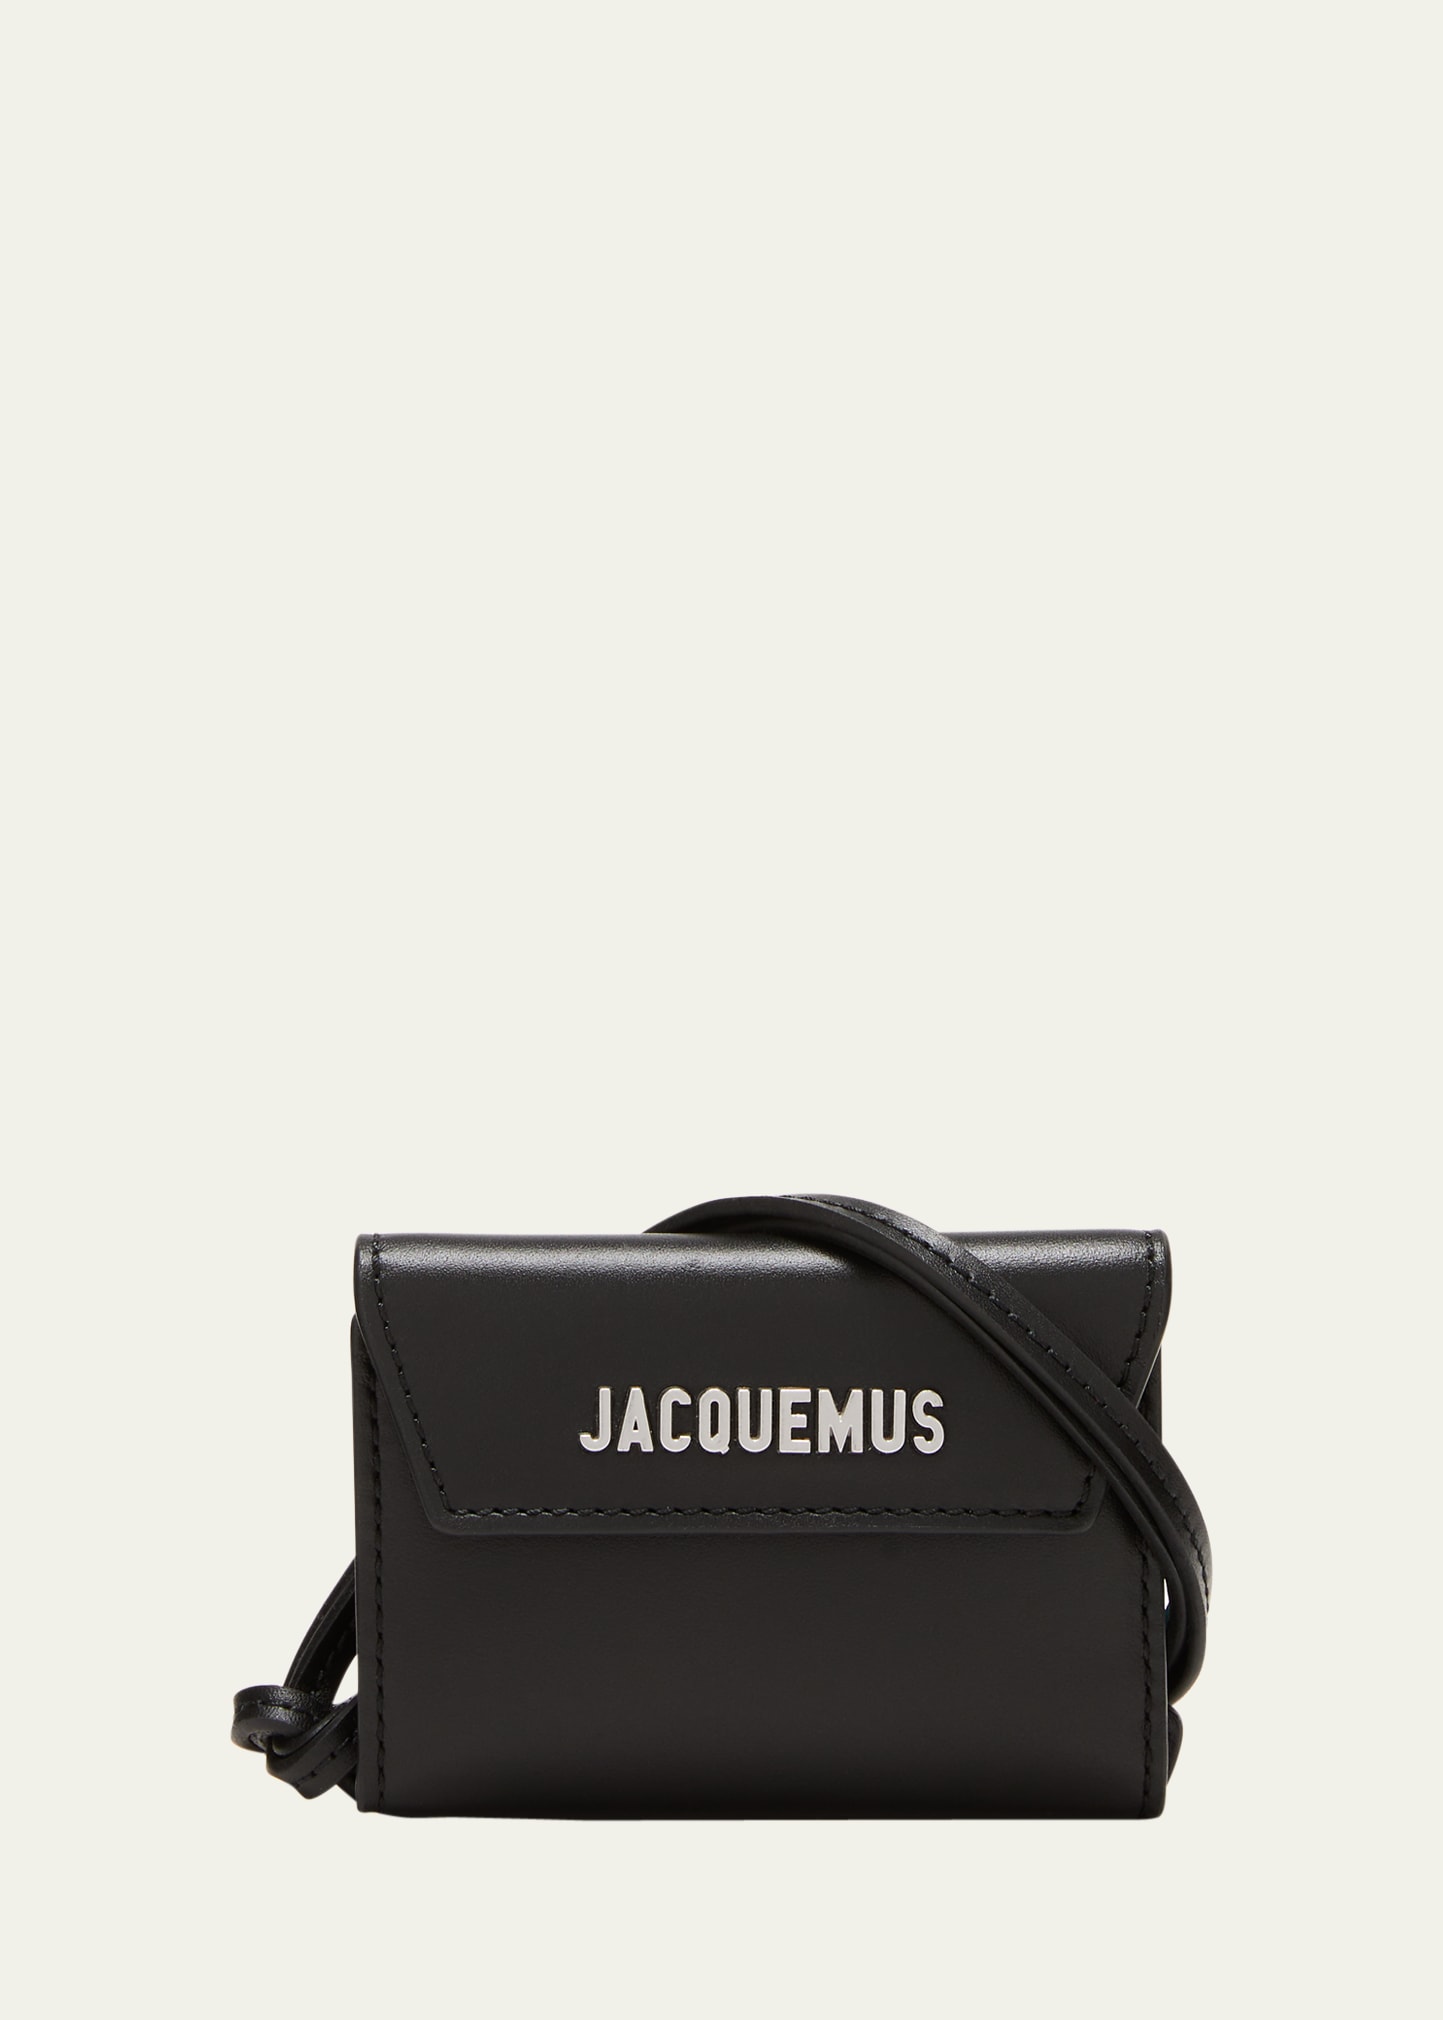 Le Porte Azur strap wallet, Jacquemus